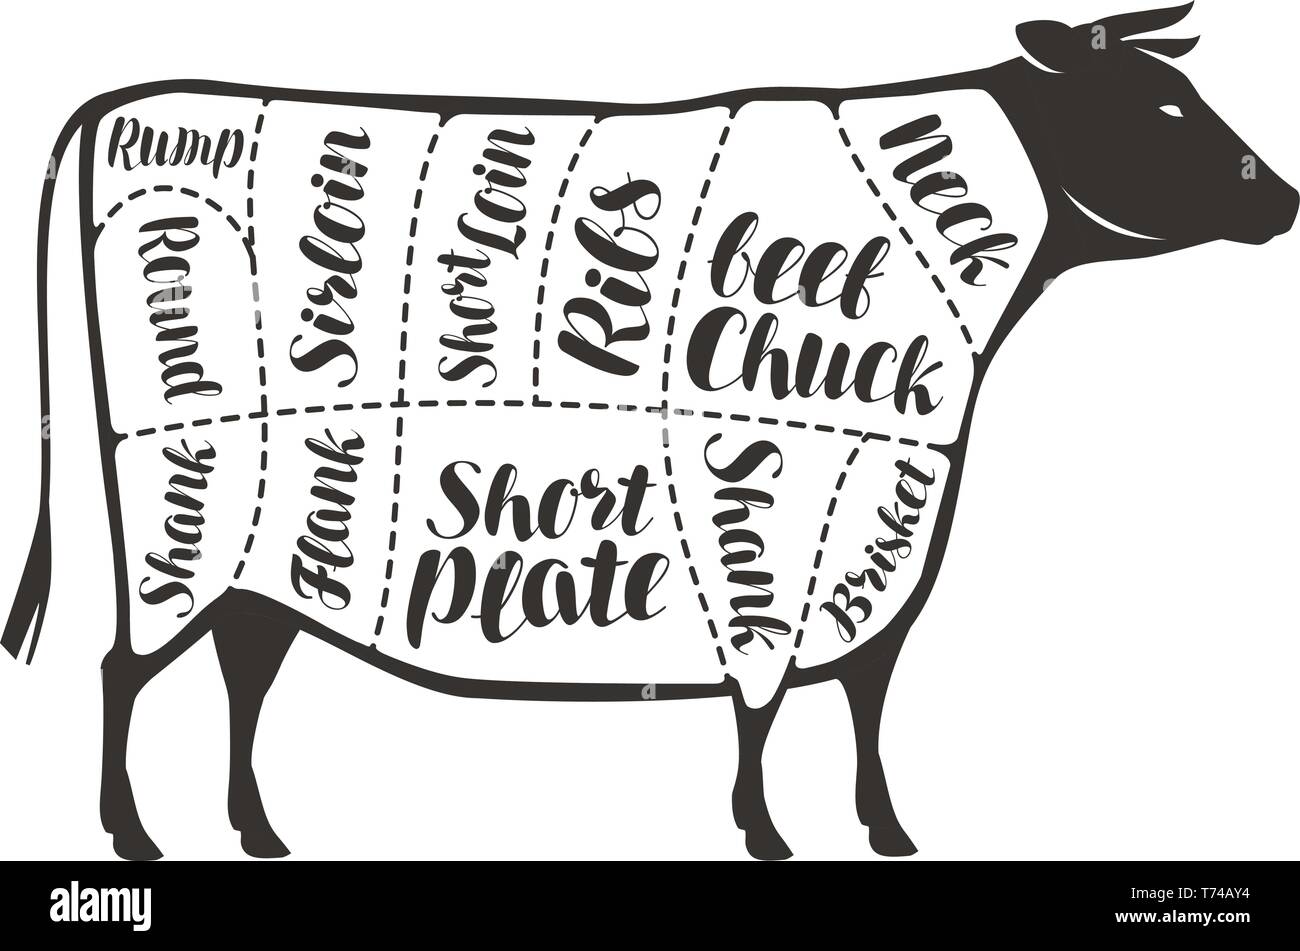 Teilstücke von Rindfleisch, Kuh oder Bulle. Metzgerei, Fleisch Vector  Illustration Stock-Vektorgrafik - Alamy